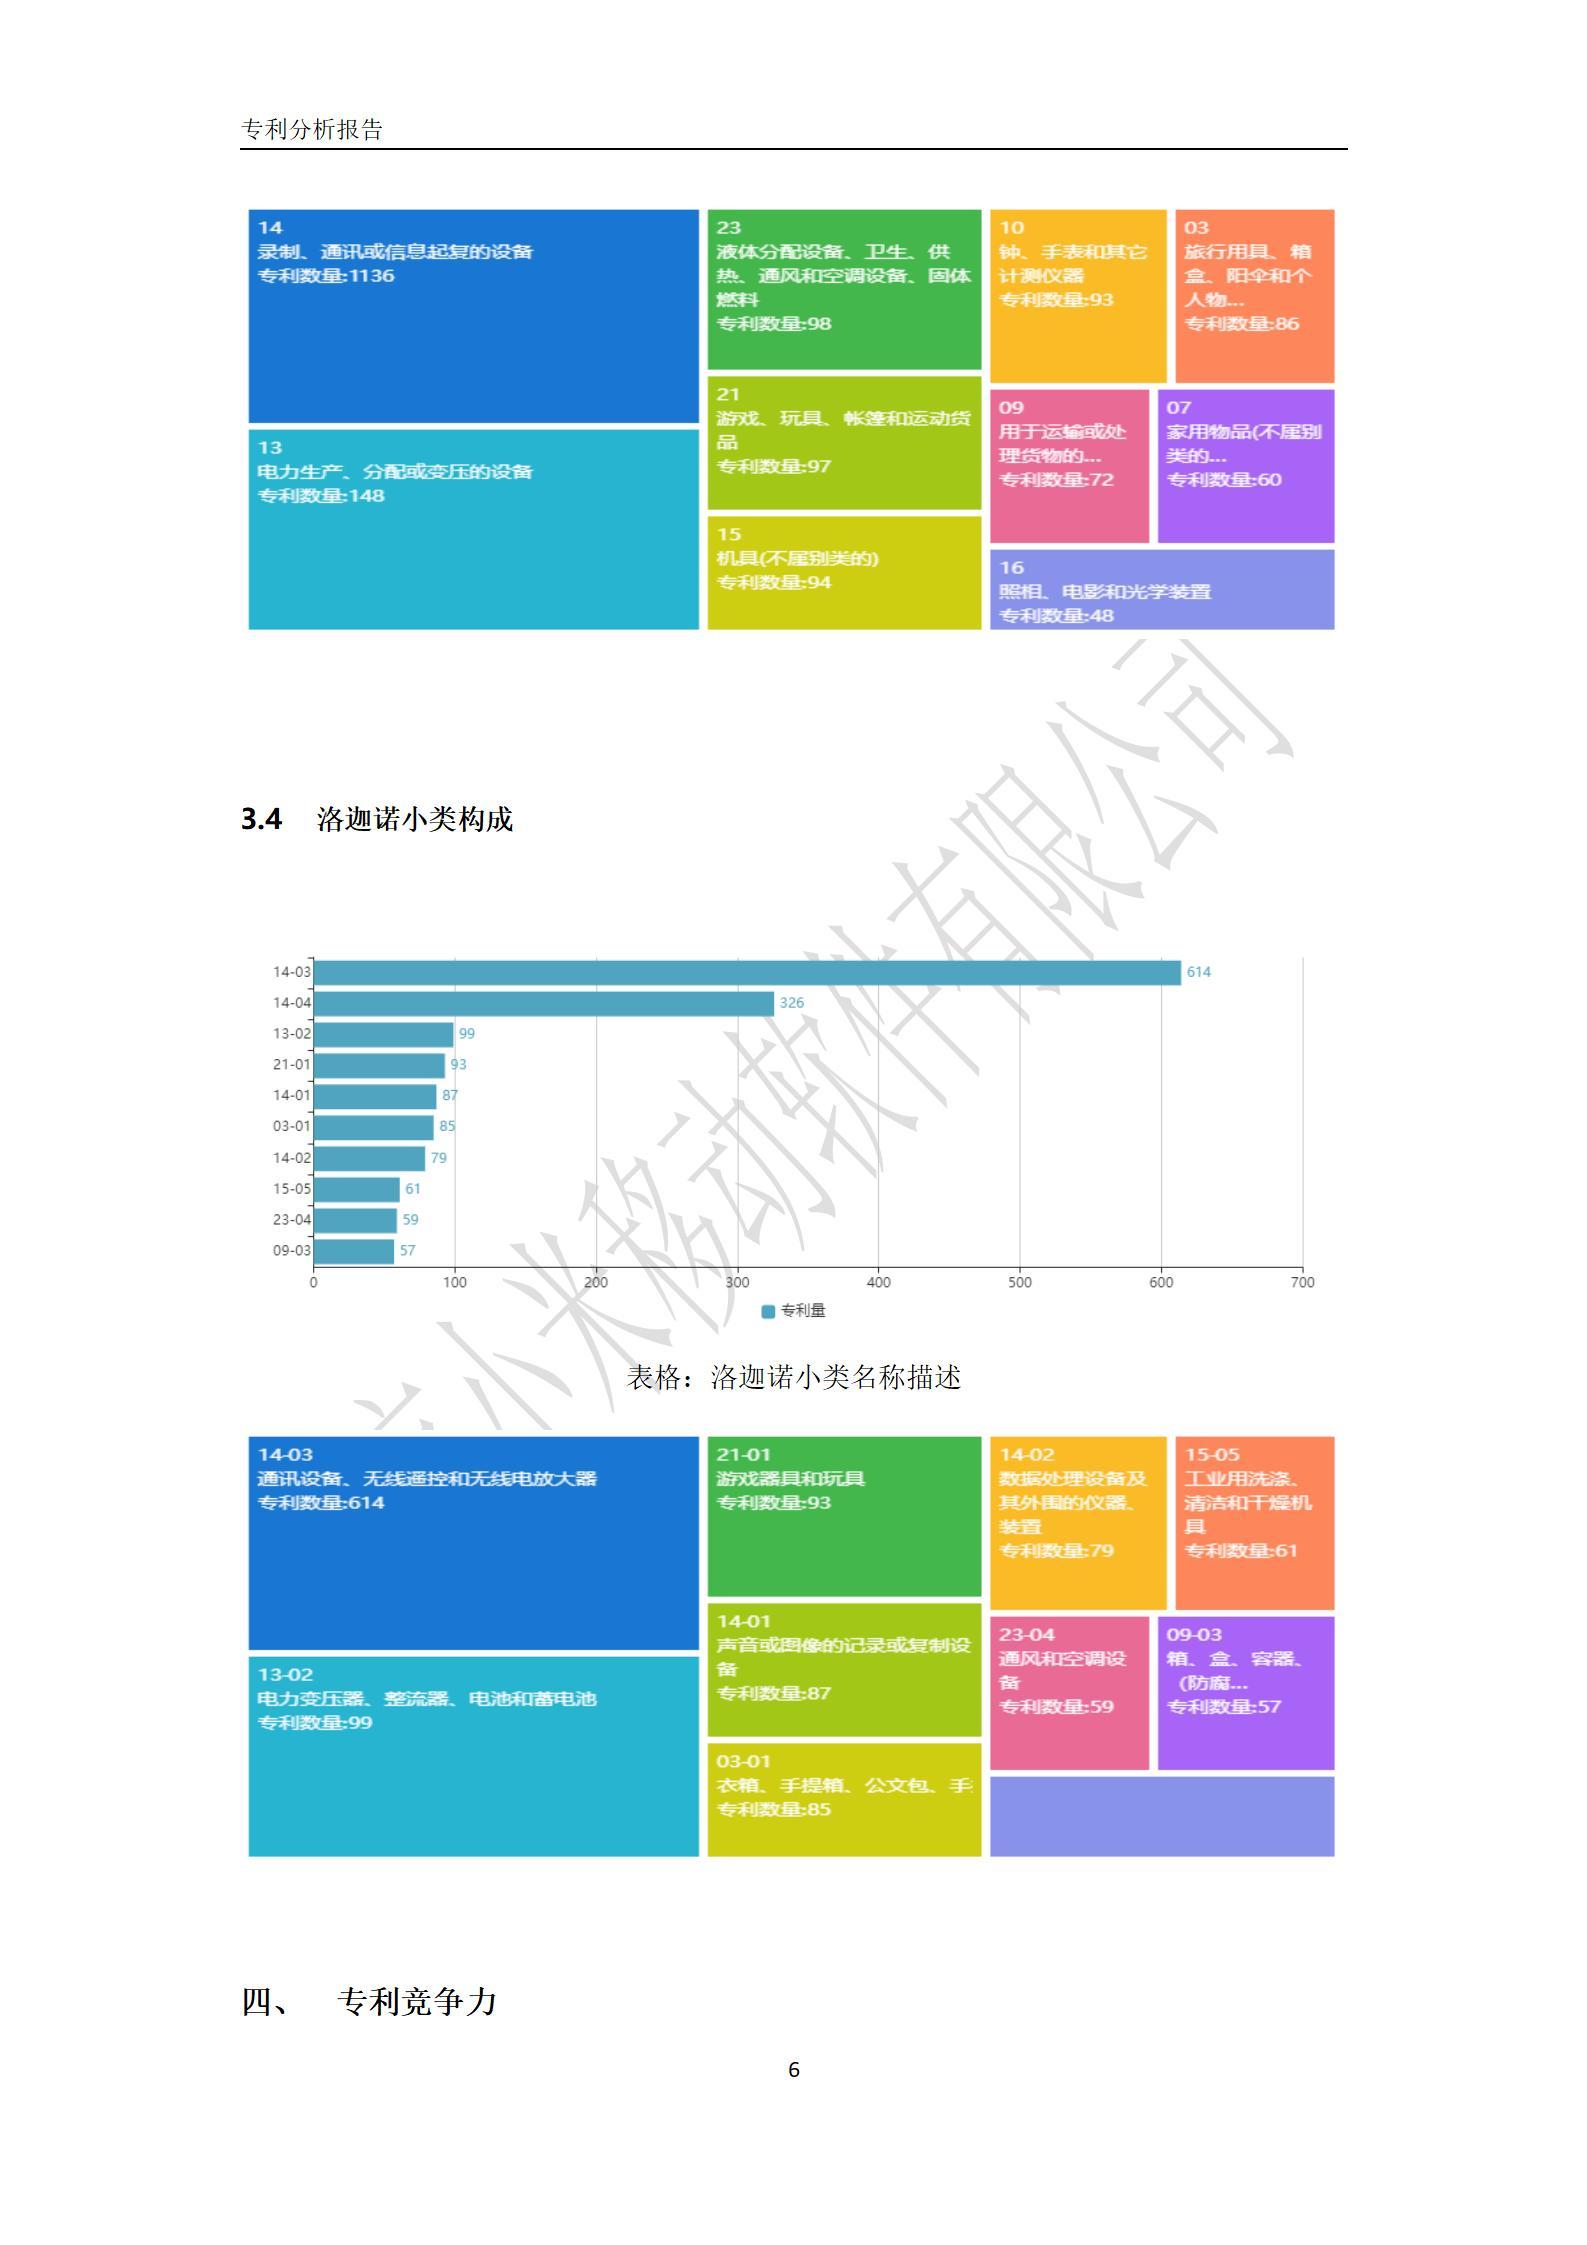 北京小米移动软件有限公司专利分析报告-6.jpg